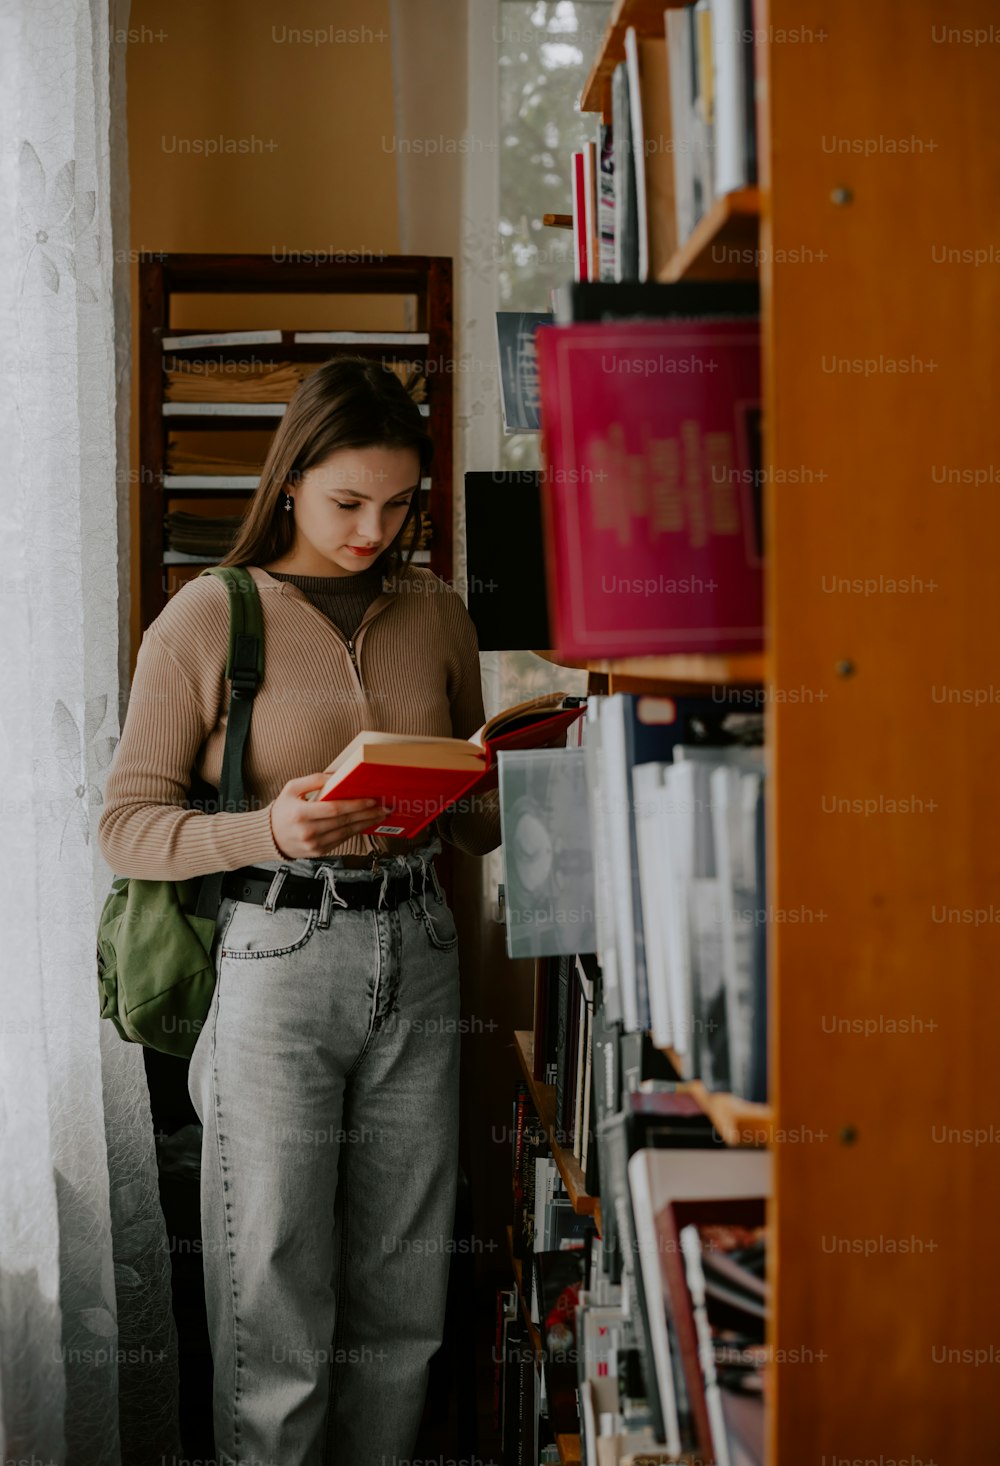 Eine Frau, die vor einem Bücherregal steht